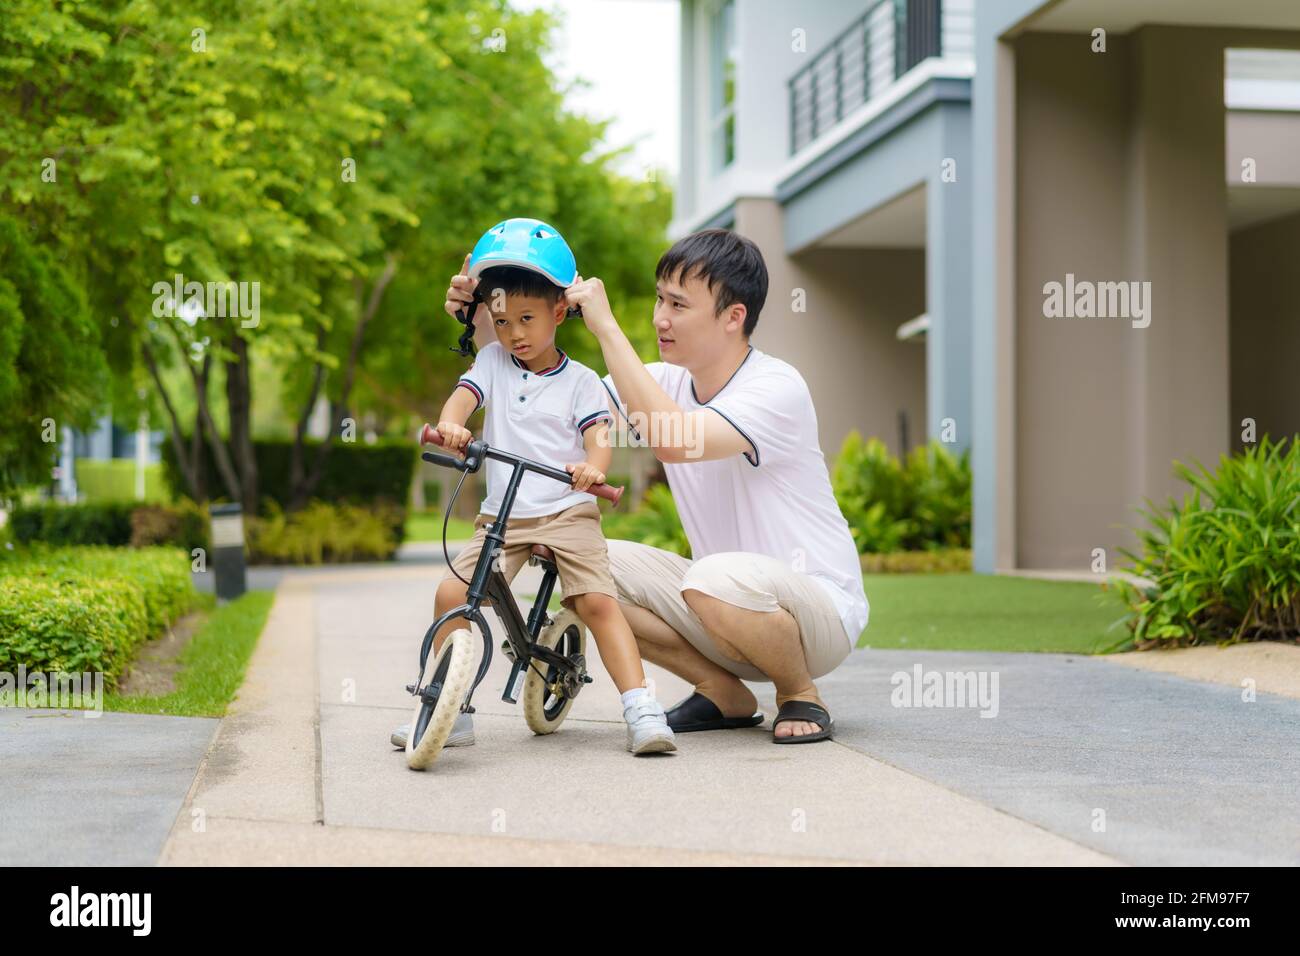 Der asiatische Vater trägt einen Helm für seinen Sohn während er seinem Kind beibringt, wie man in einem Nachbarschaftsgarten Fahrrad fährt, interagieren Väter mit ihren Kindern Stockfoto